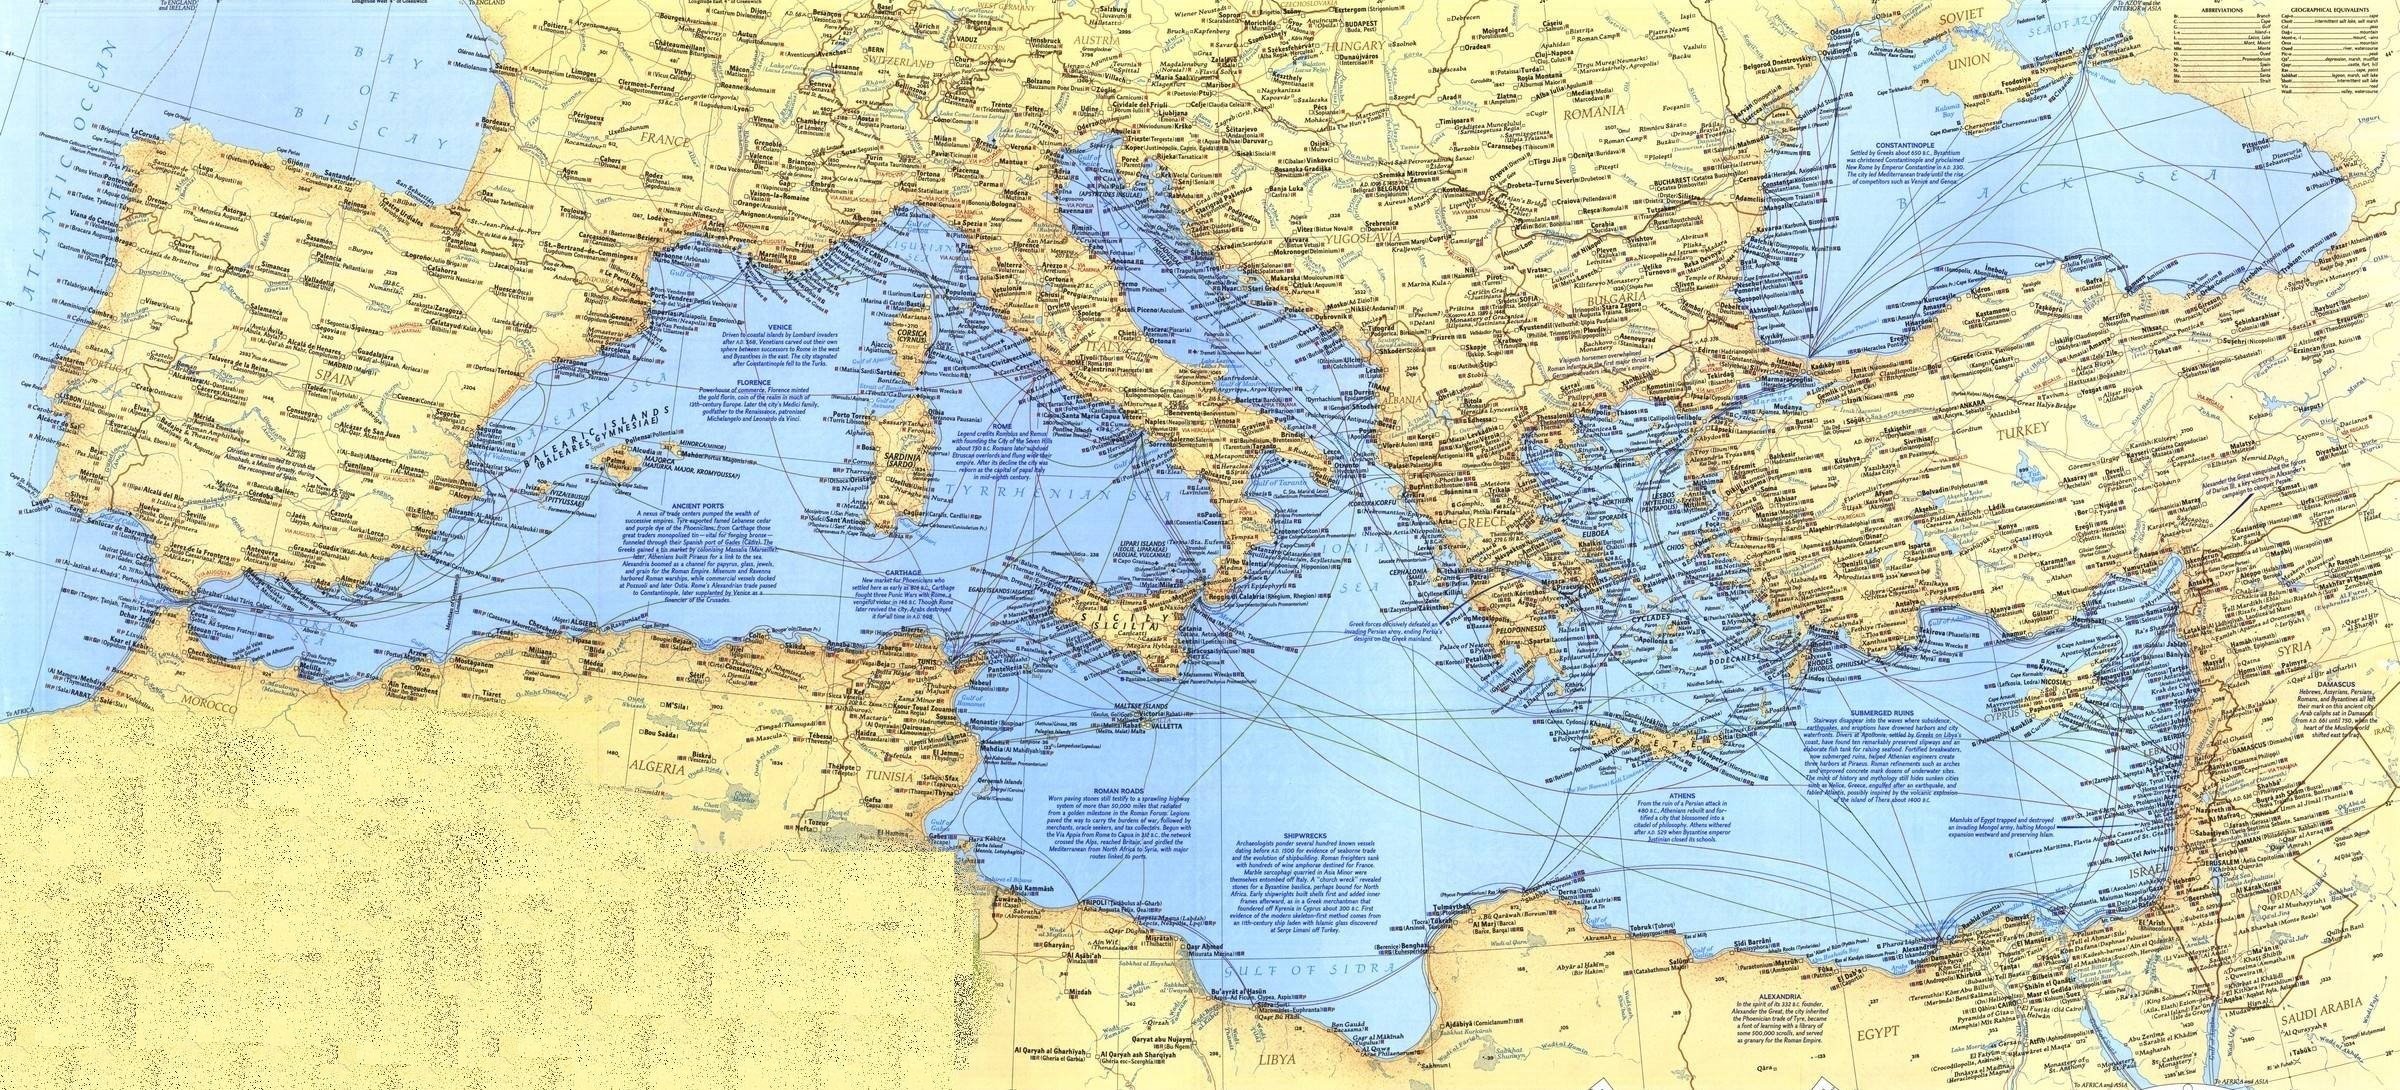 Средиземный океан на карте. Карта морей Средиземноморья. Моря Средиземного моря на карте. Физическая карта Средиземноморья. Черное и Средиземное море на карте.